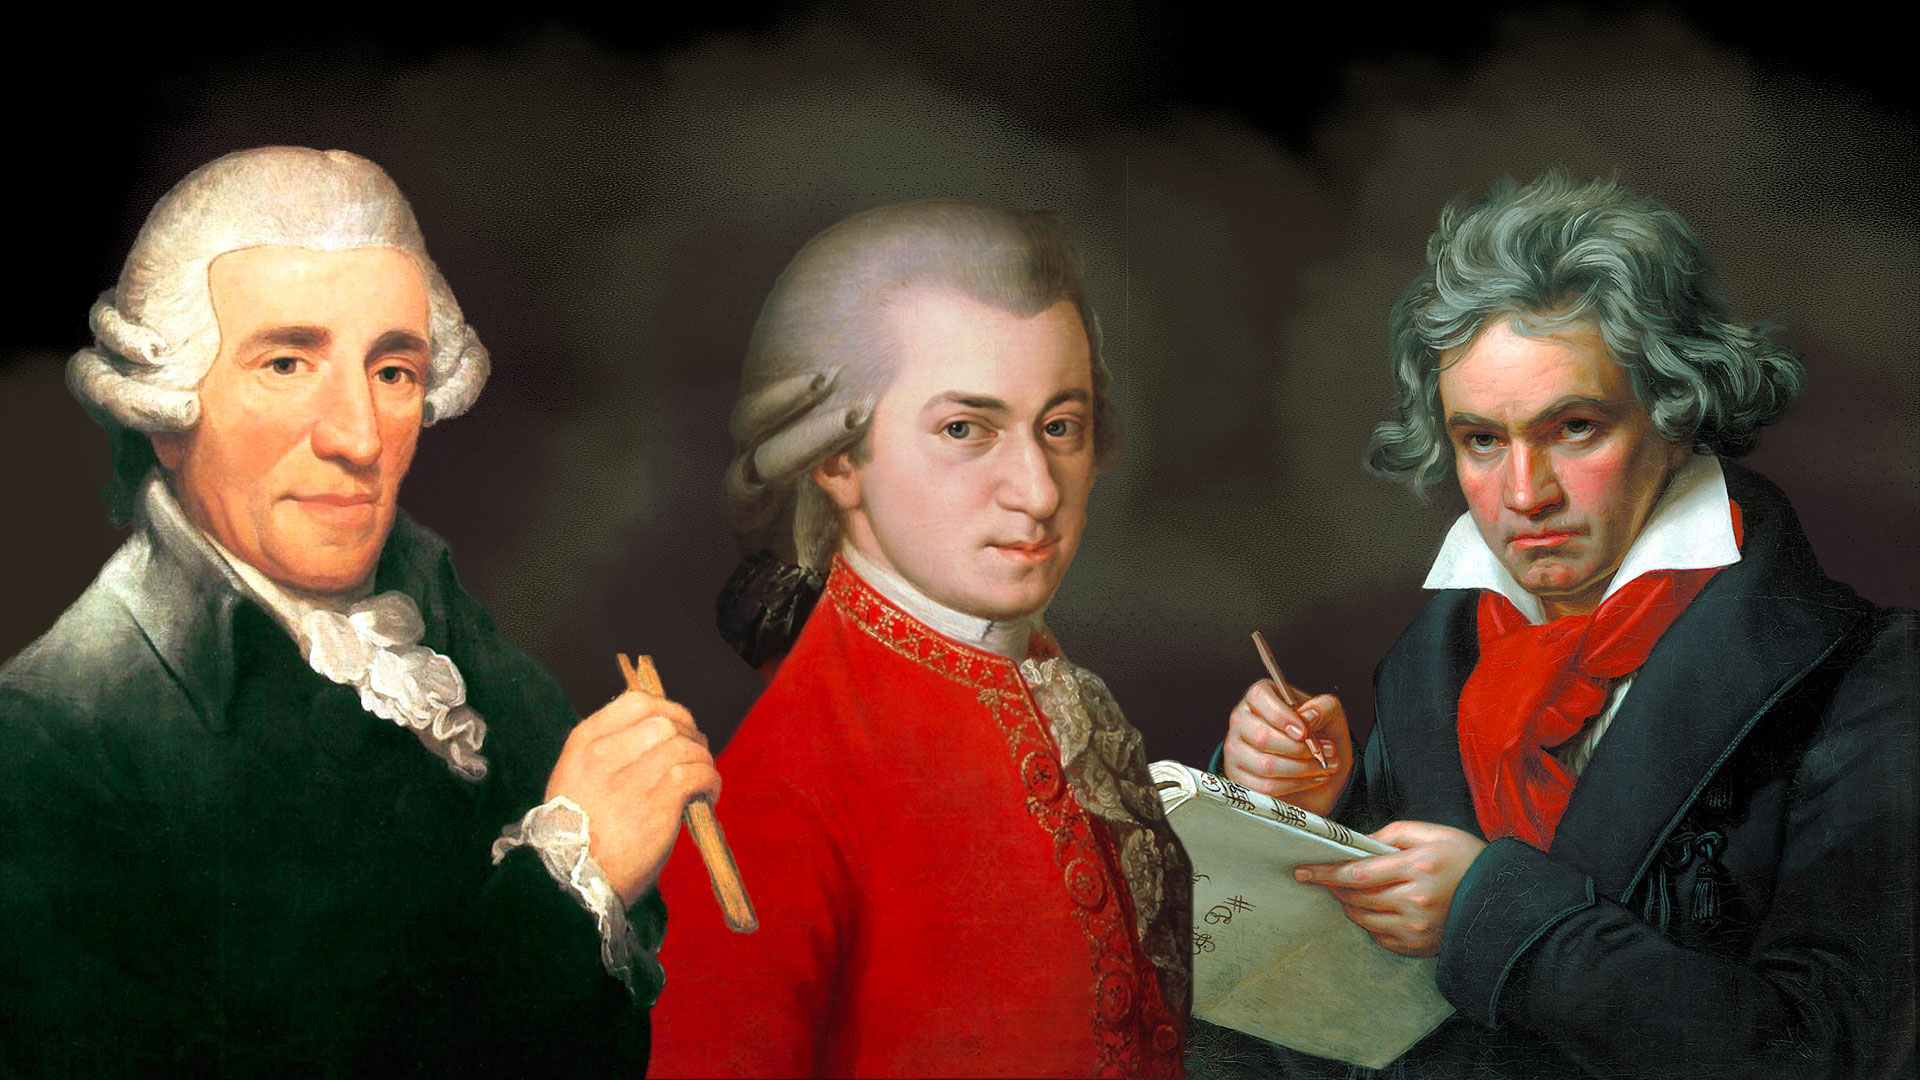 El curso recorre el estilo musical, las principales obras, y aspectos personales de estos tres importantes compositores. En Haydn, Mozart y Beethoven encontramos el espectro musical completo desde el final del barroco hasta comienzos del romanticismo